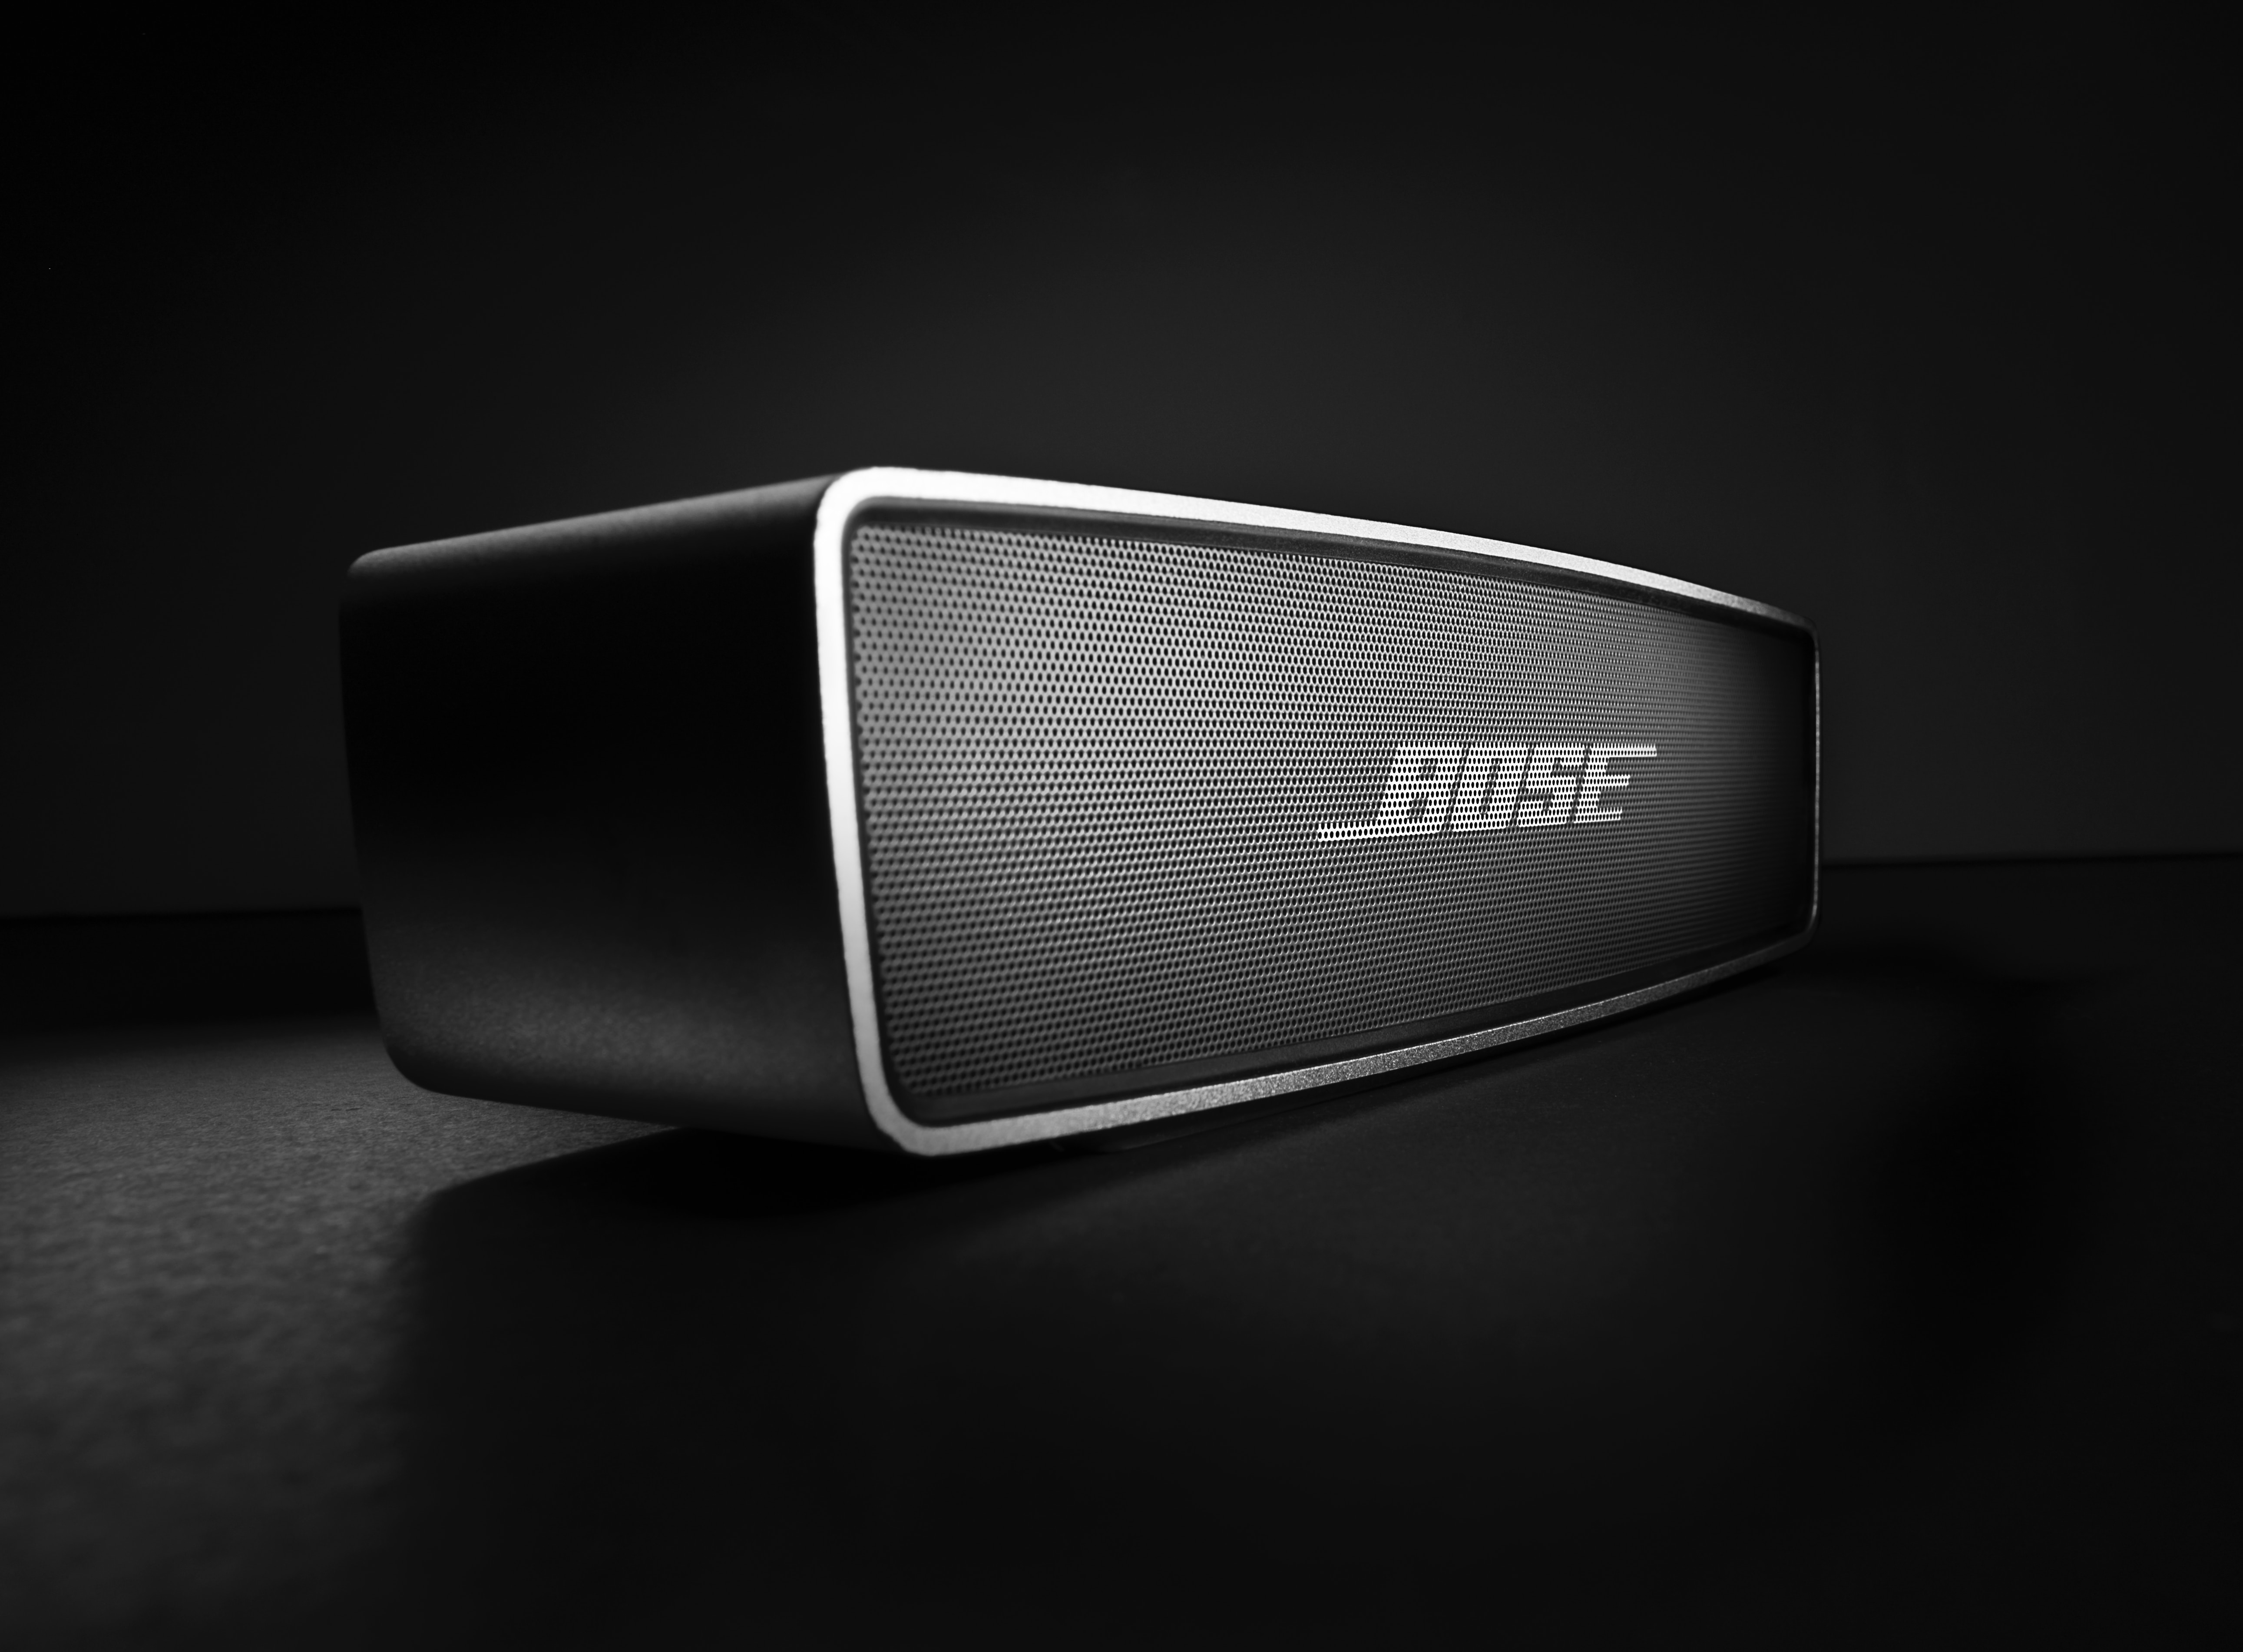 Bose promoverá sus ventas online y cerrará tiendas minoristas